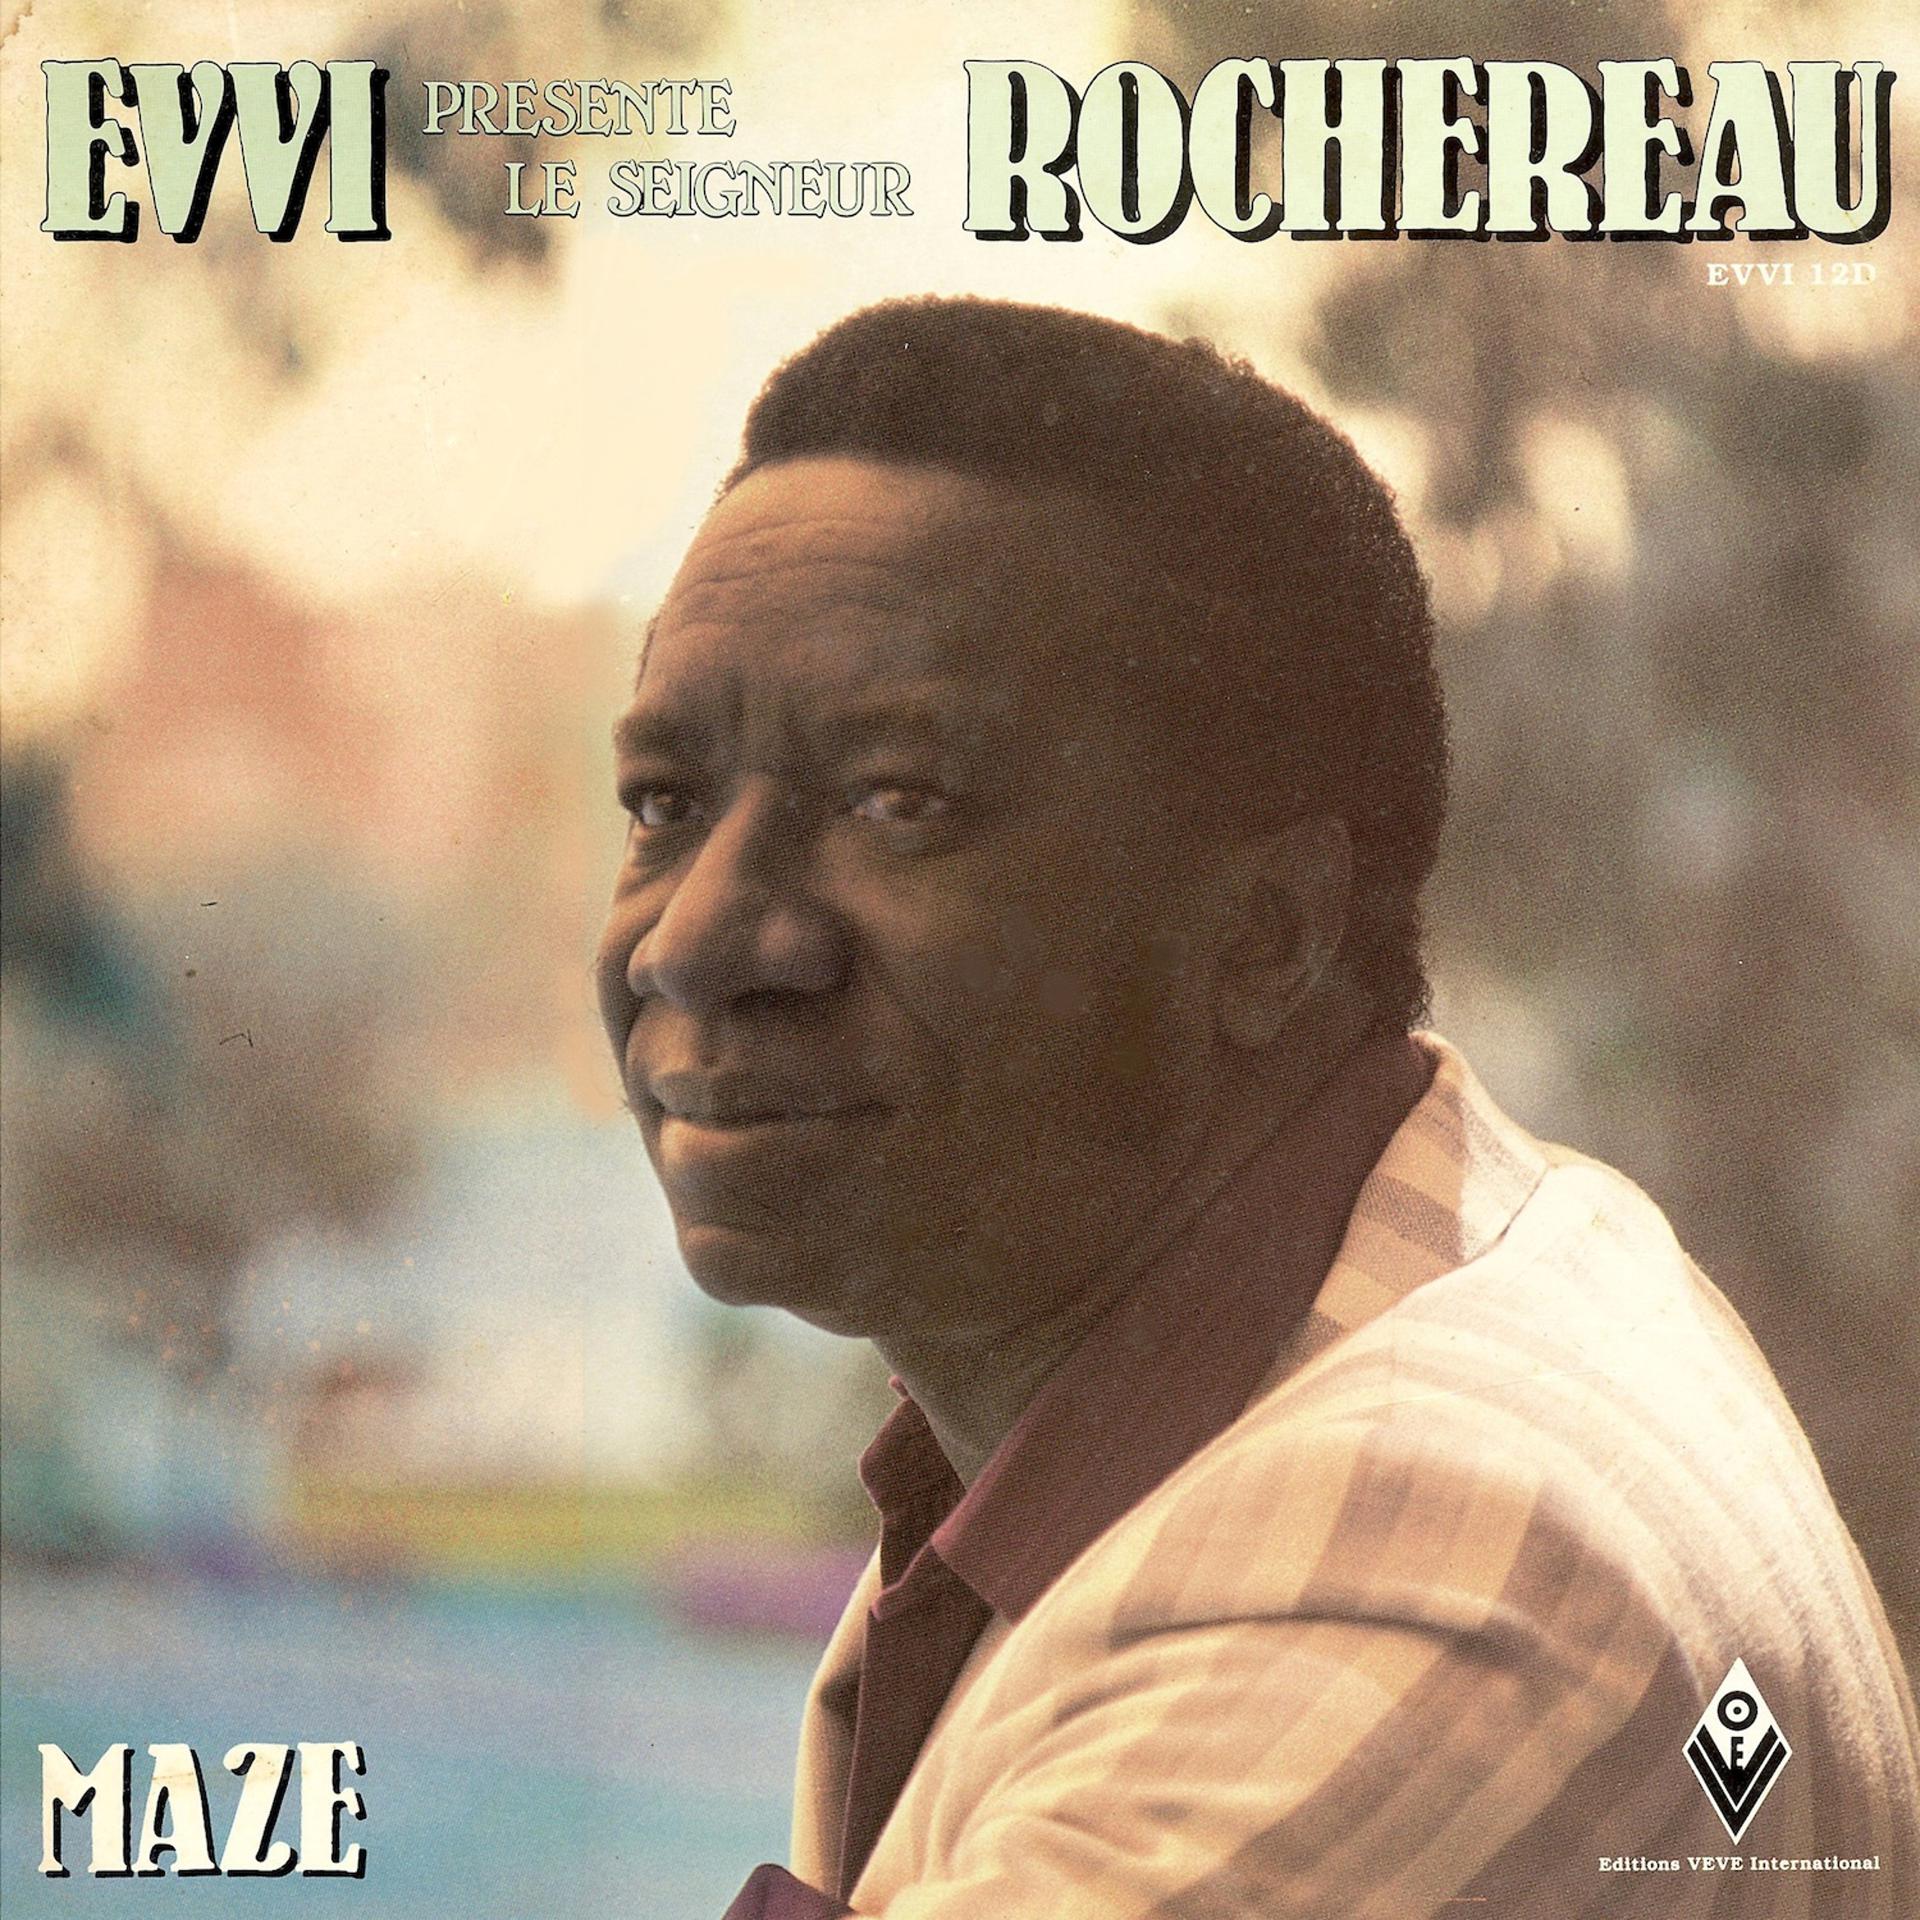 Постер альбома Evvi Presente "Le Seigneur" Rochereau: Maze